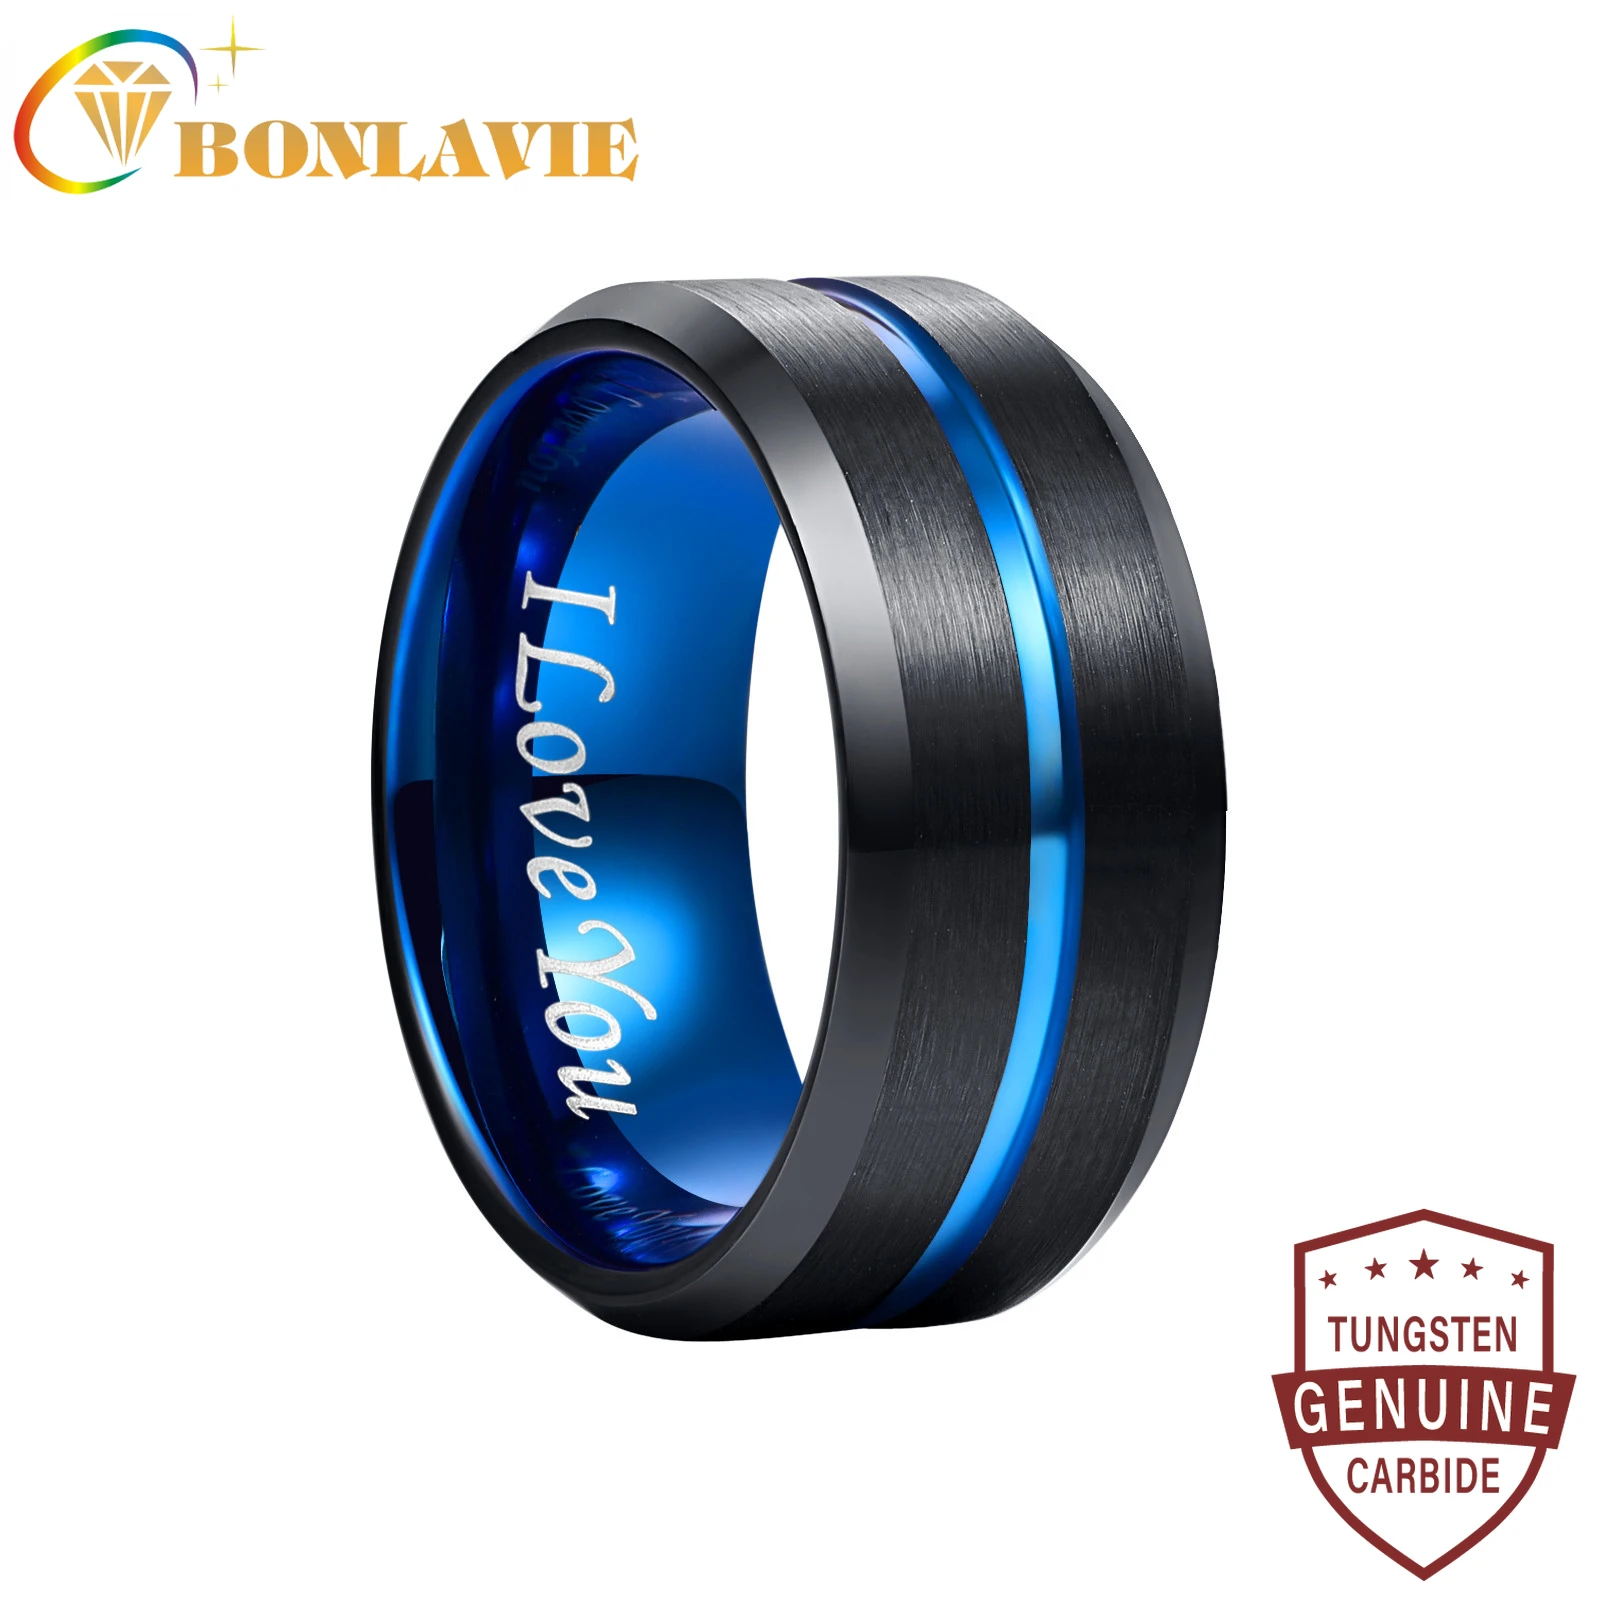 

BONLAVIE Men's Tungsten Carbide Ring Blue+Black Tungsten Steel Ring Beveled Edge Wedding Band 10mm 6mm 4mm Size 7-17 Comfort Fit